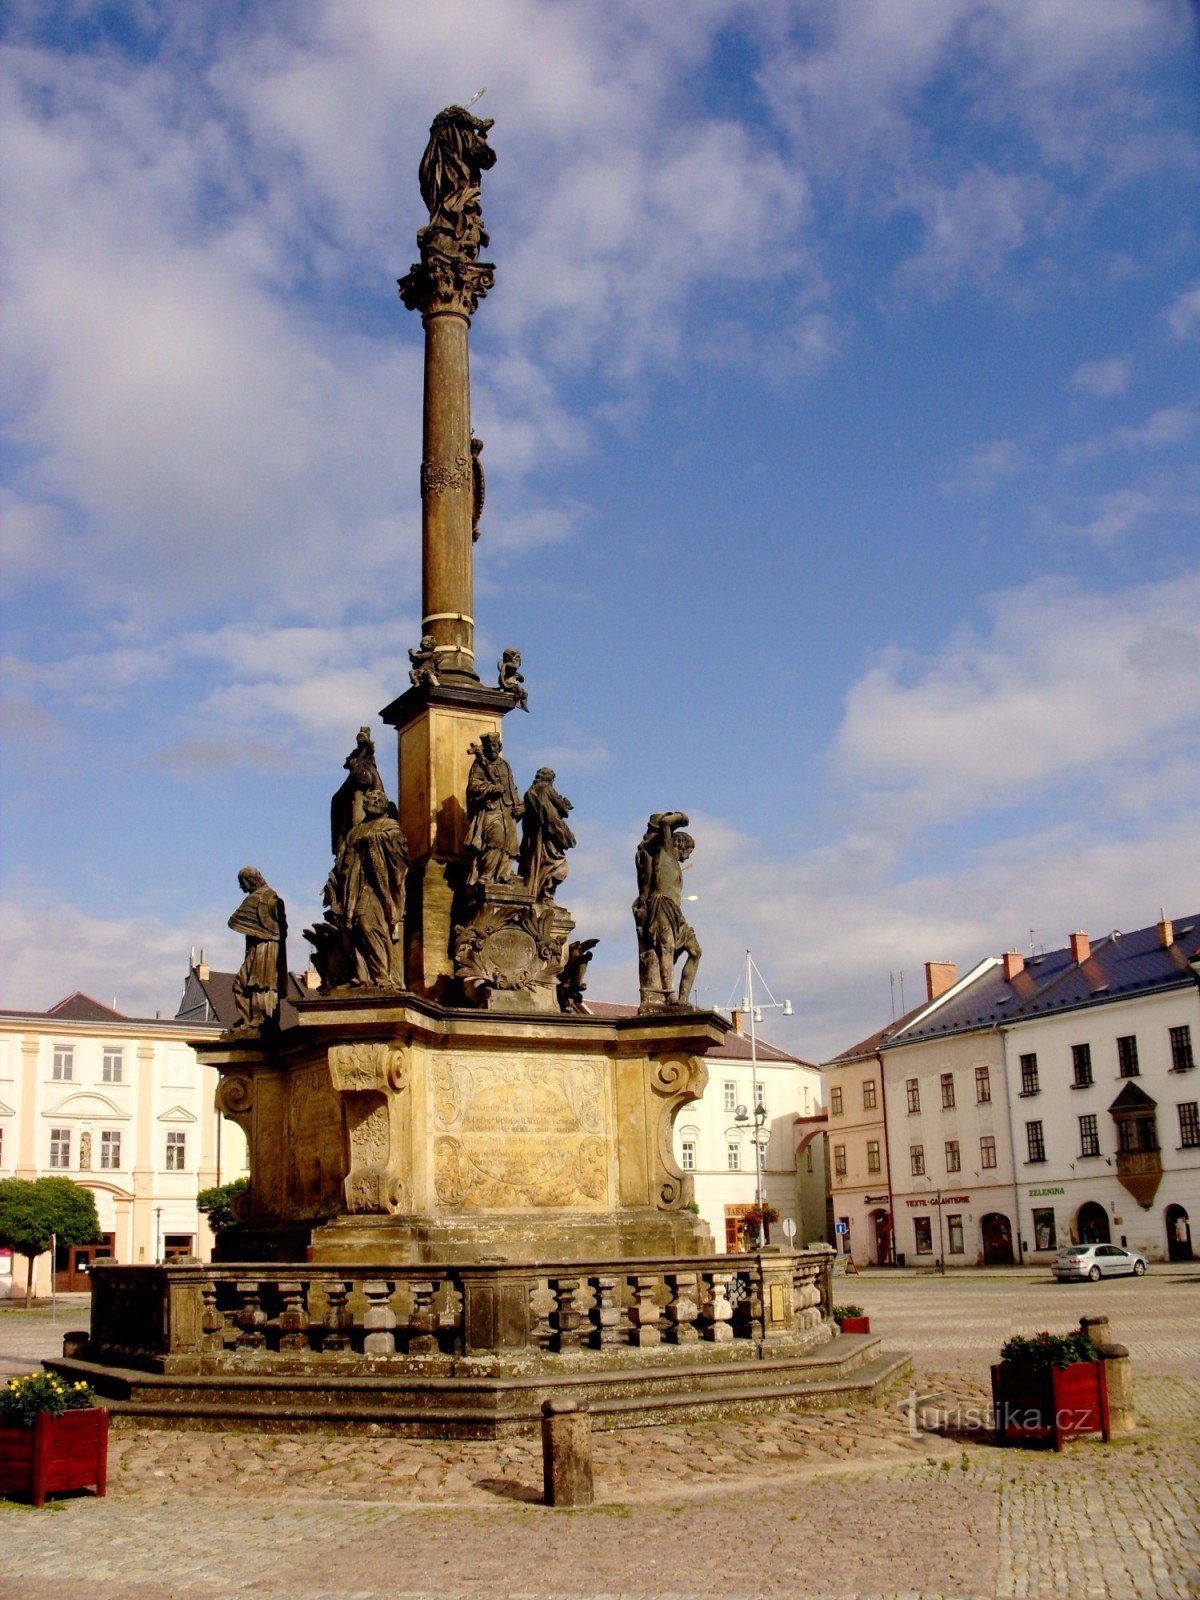 Moravská Třebová și atracțiile sale